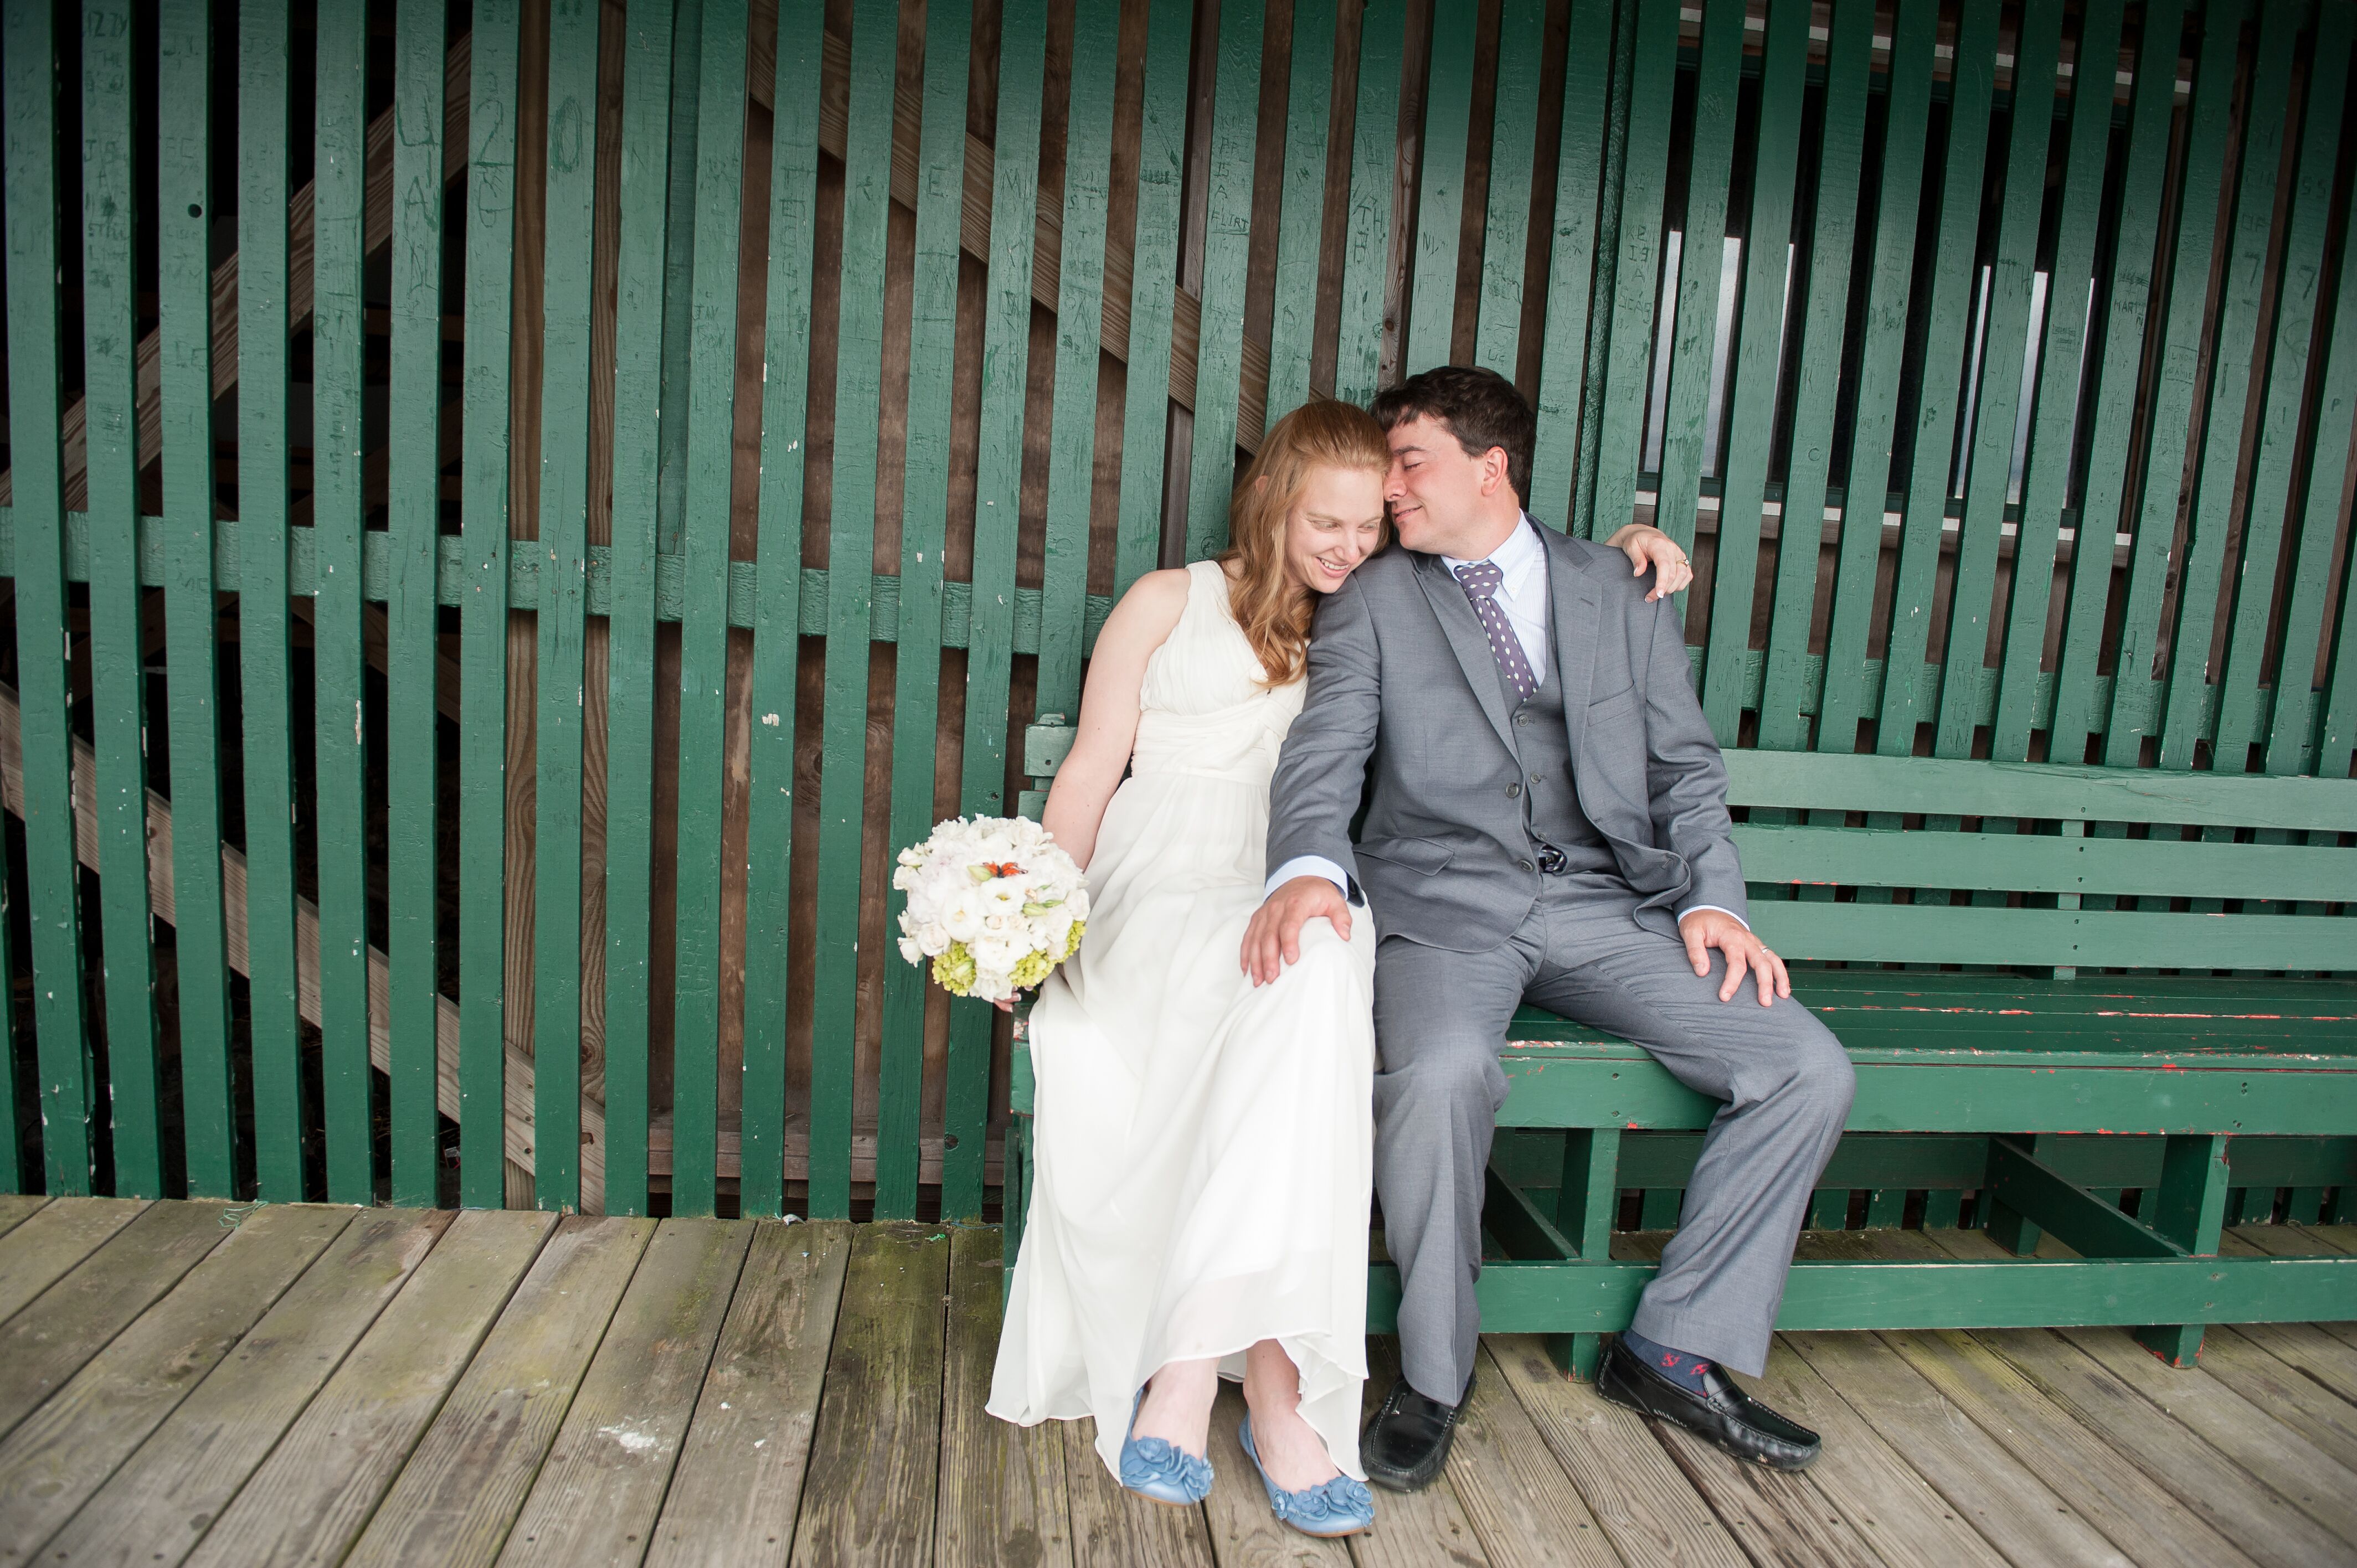 A Maine Beach Wedding At Trefethen Evergreen Improvement Association